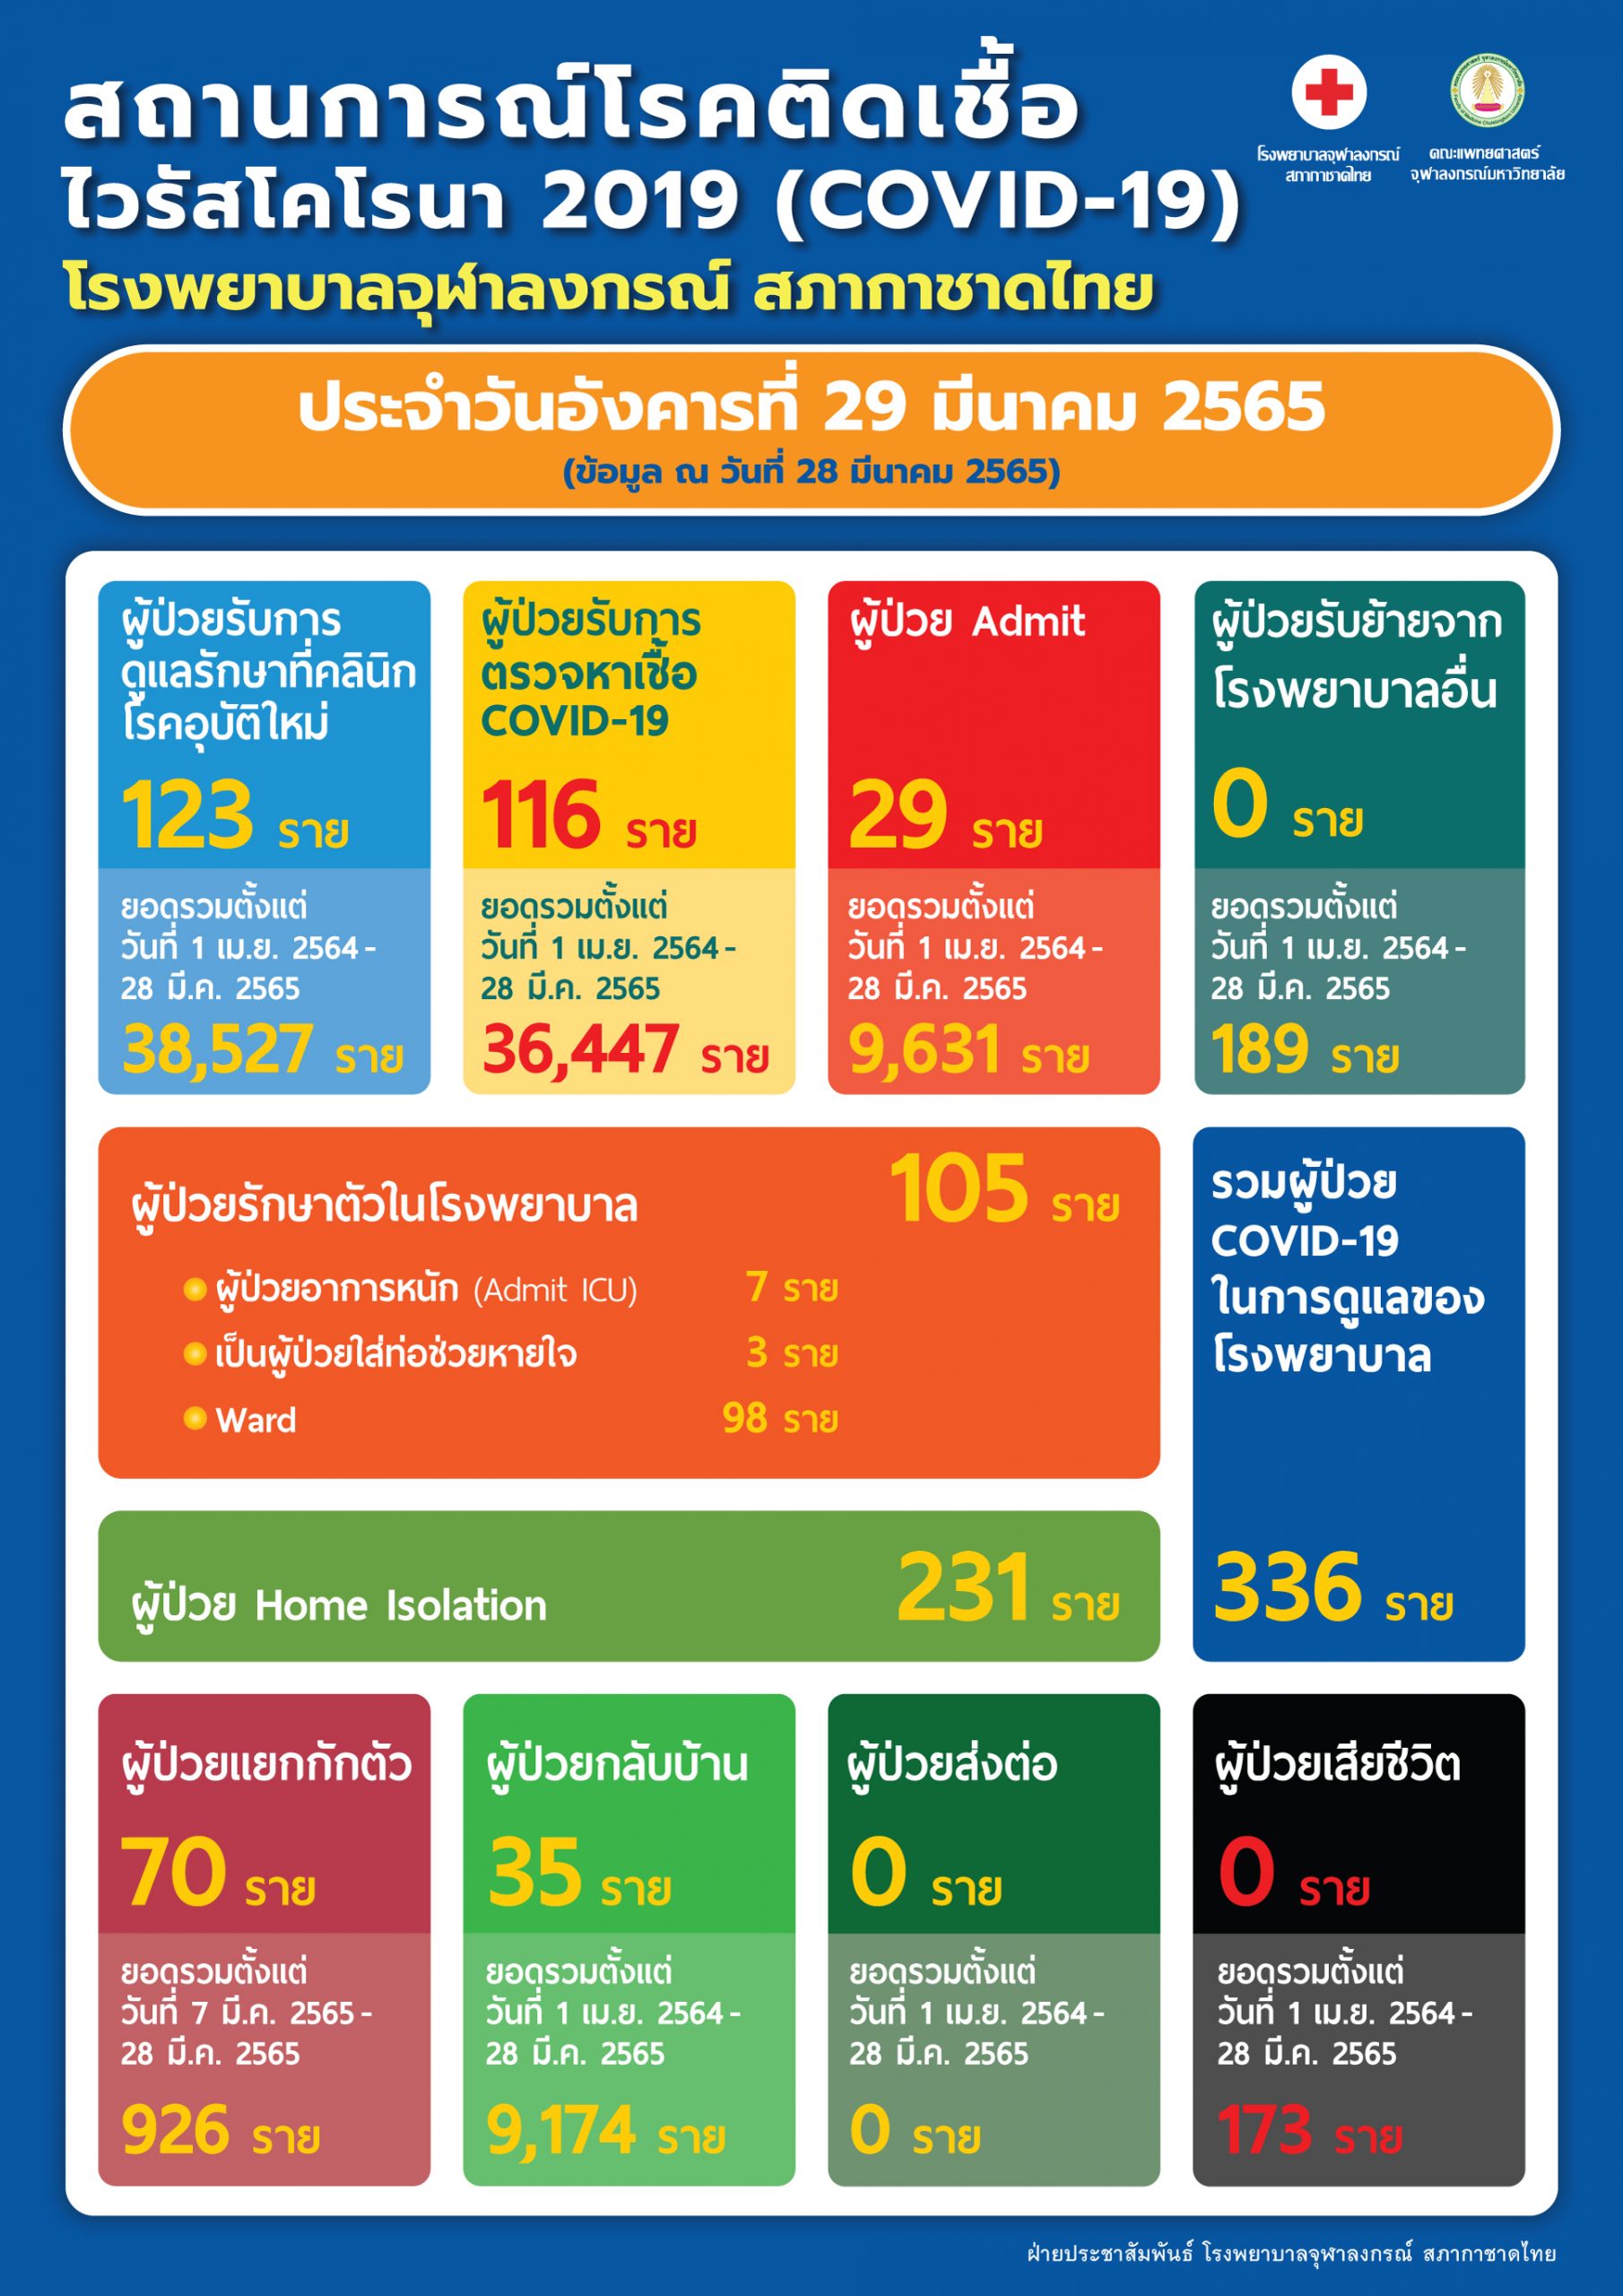 สถานการณ์โรคติดเชื้อไวรัสโคโรนา 2019 (COVID-19) โรงพยาบาลจุฬาลงกรณ์ สภากาชาดไทย ประจำวันอังคารที่ 29 มีนาคม 2565